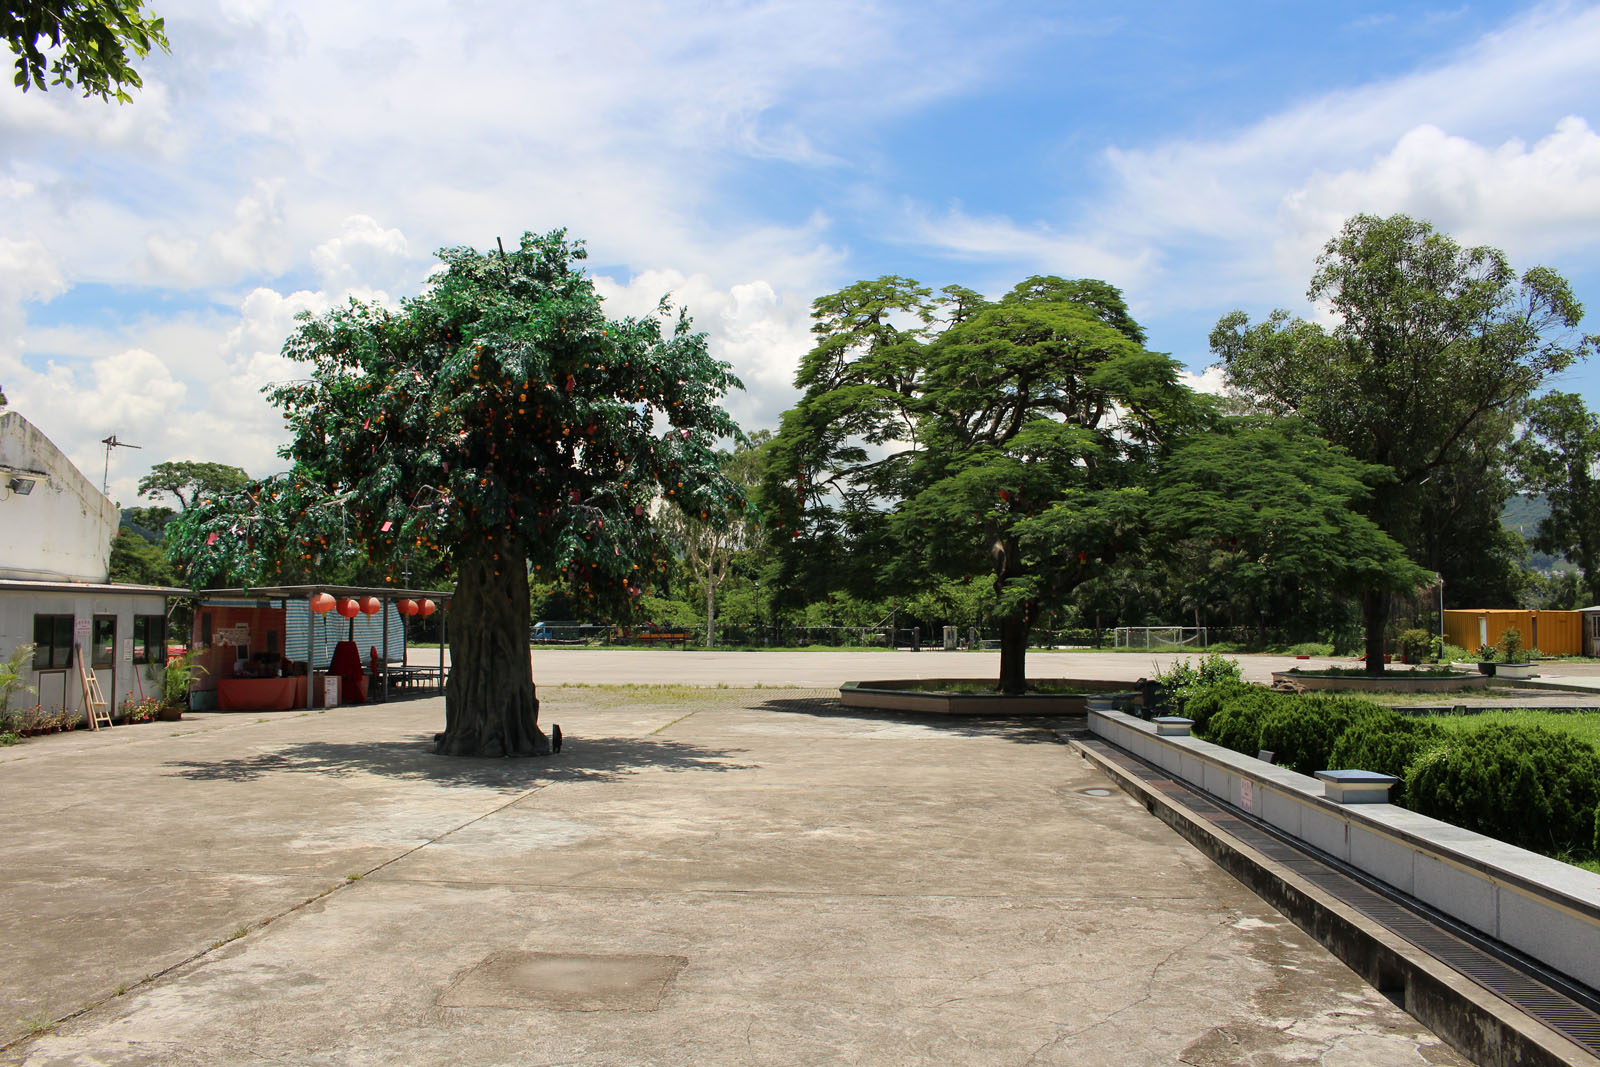 相片 6: 林村許願廣場(包括許願樹)及十二生肖廣場